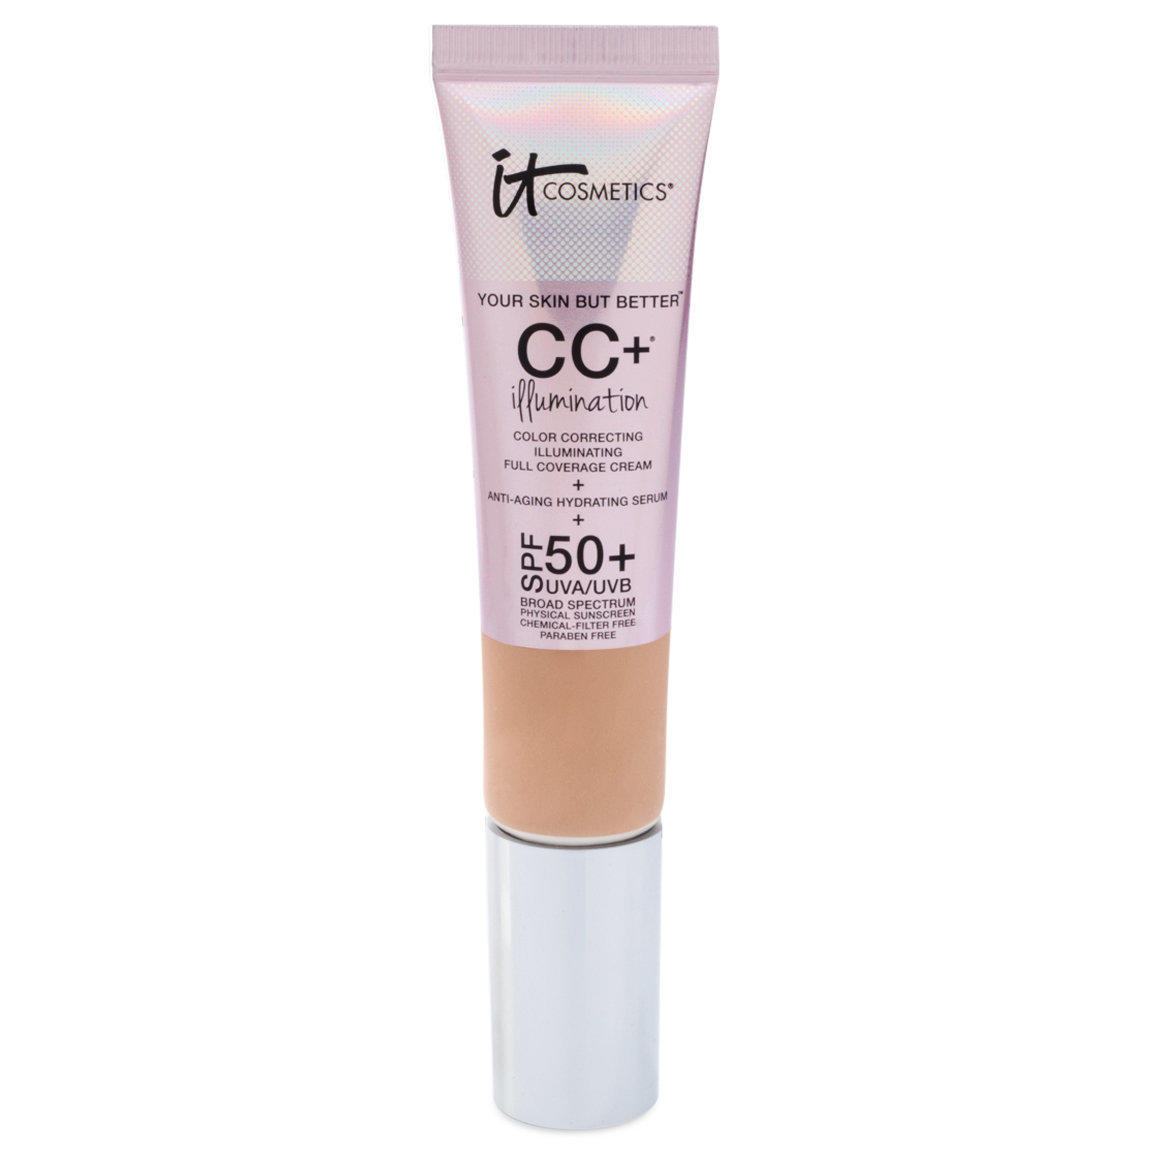 IT Cosmetics CC+ Illumination Color Correcting Full Coverage Cream Light